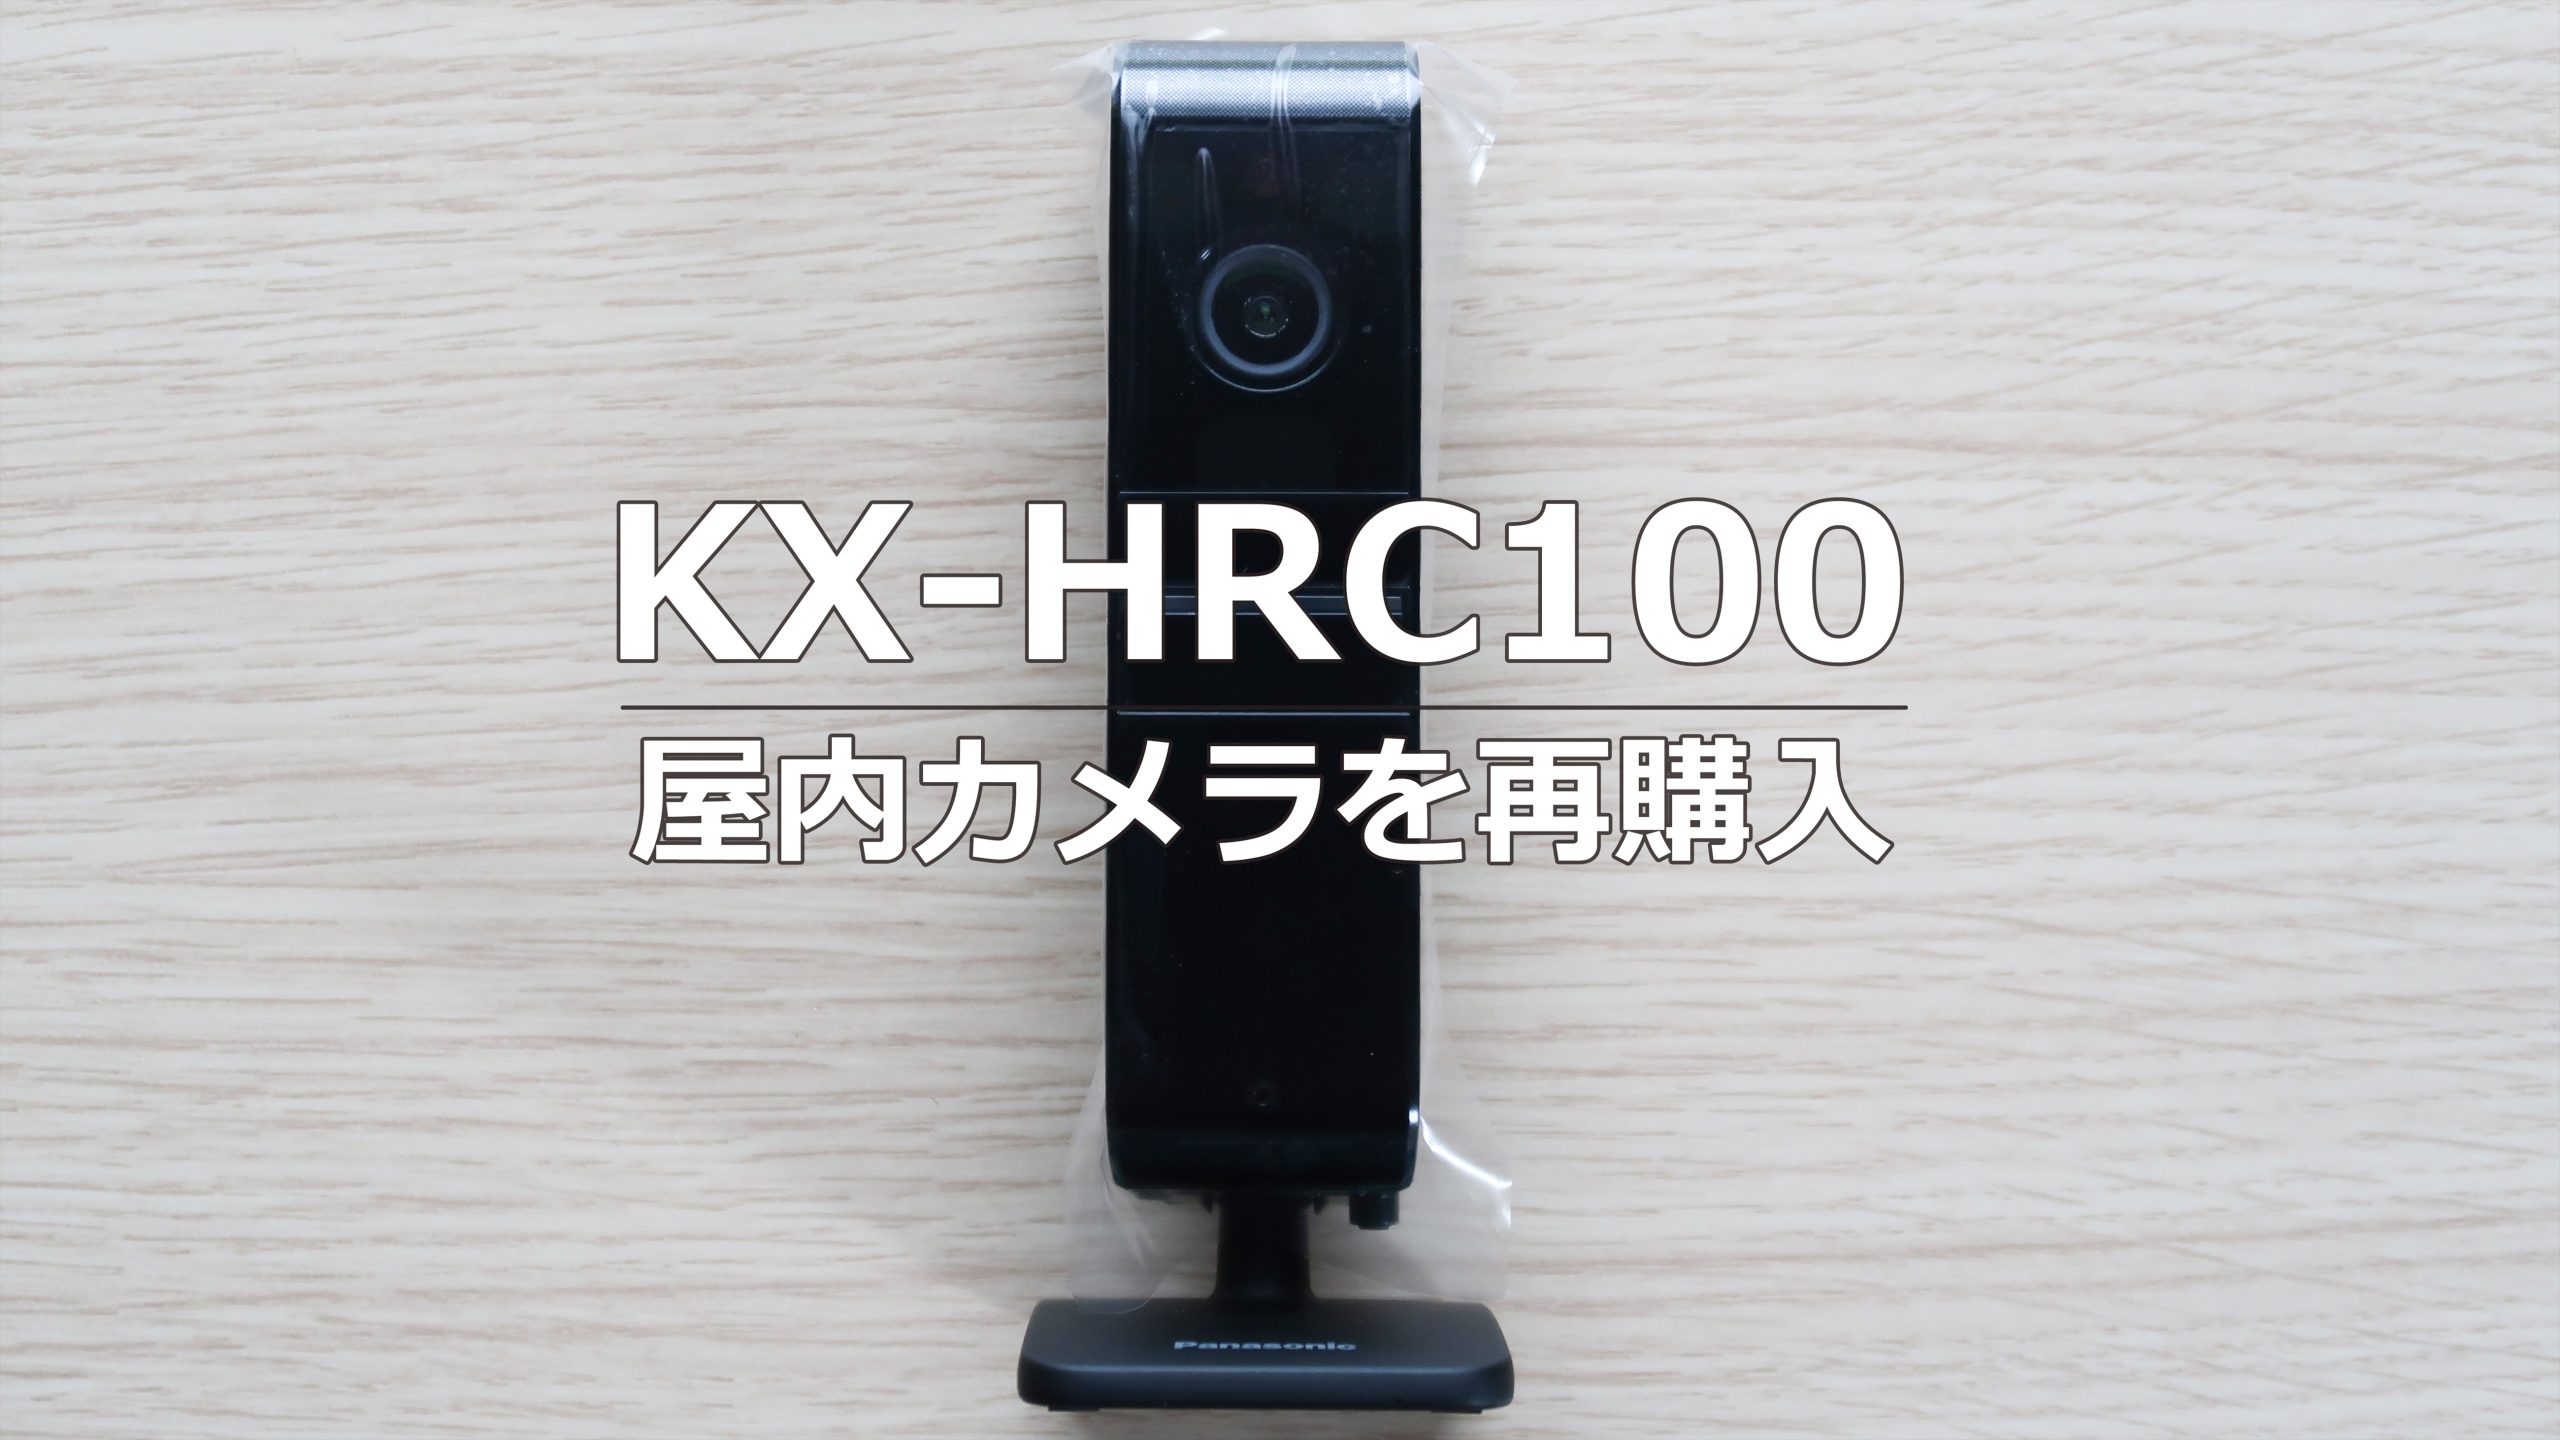 【後継機購入】KX-HRC100 屋内無線HDカメラ – お家の見守りに